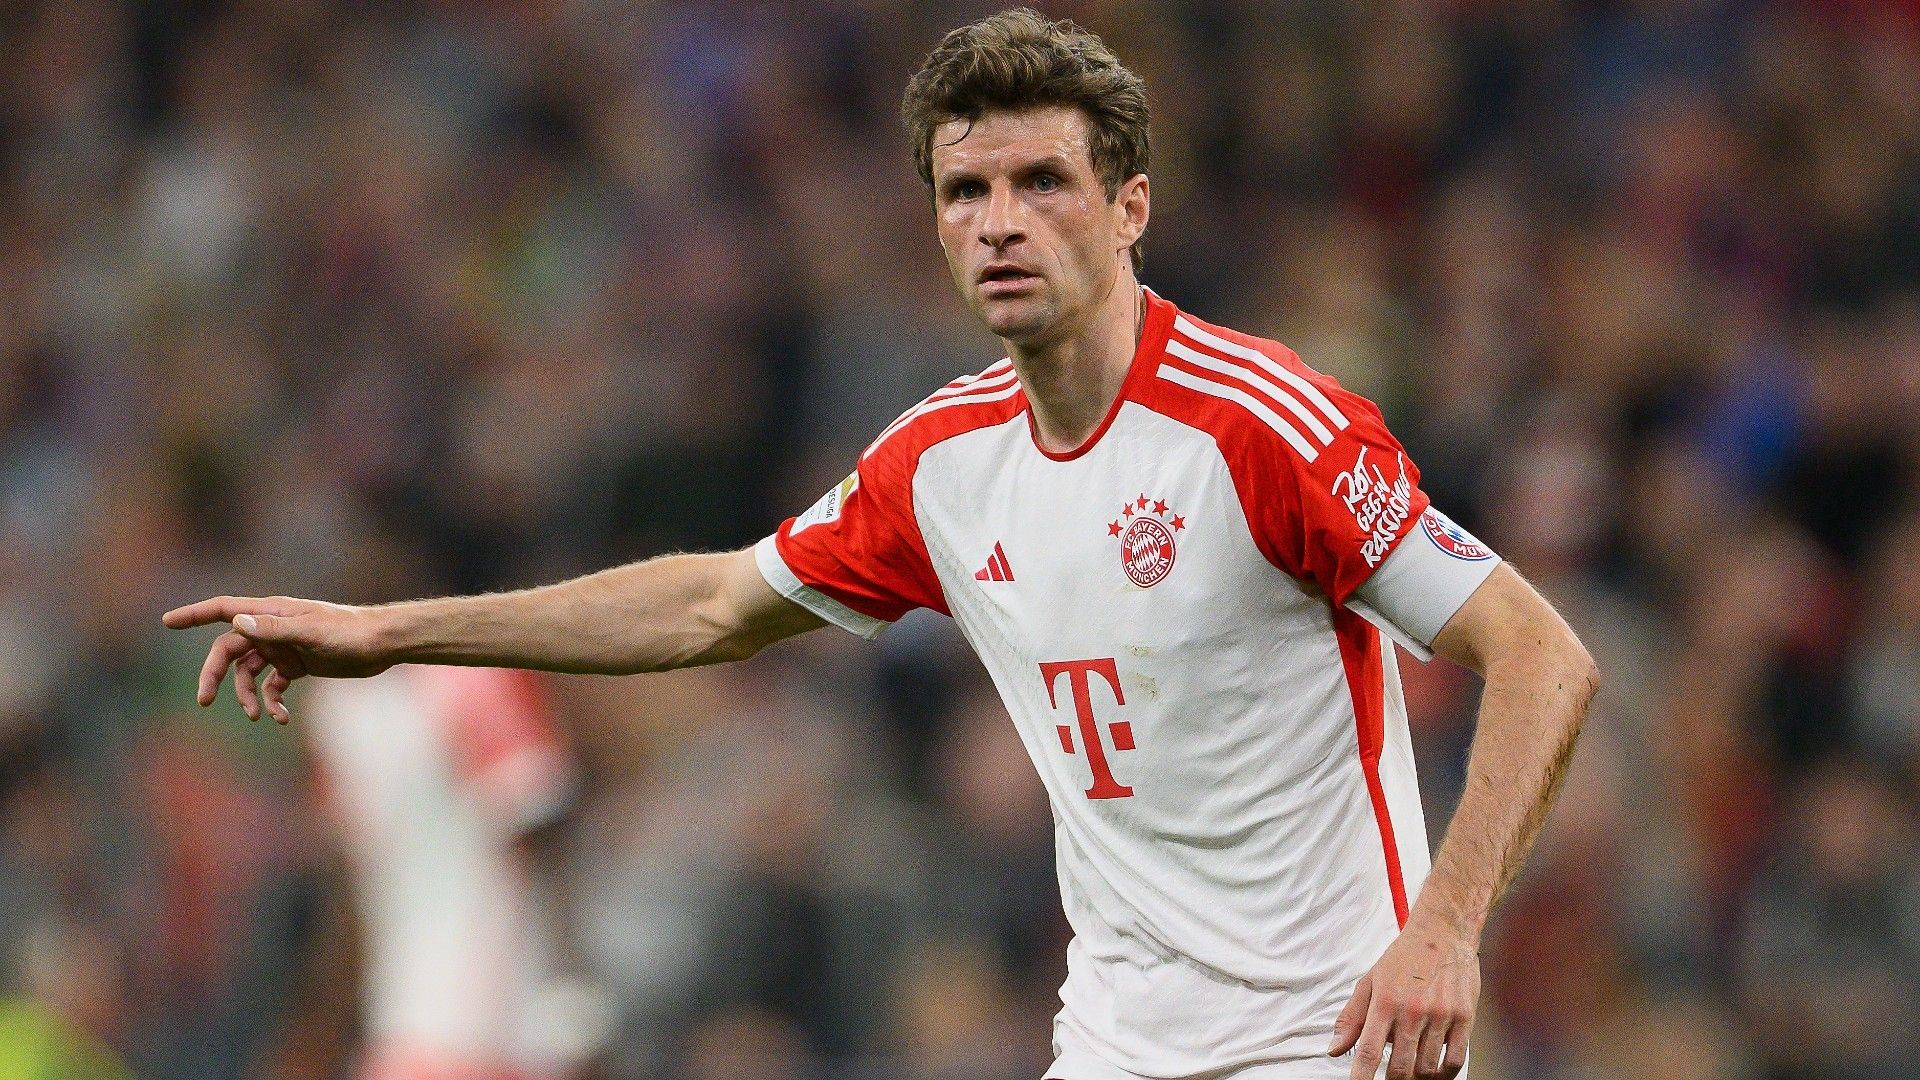 "Seine Tore haben auch mich dahin gebracht": Thomas Müller vom FC Bayern München verneigt sich vor einer Ikone